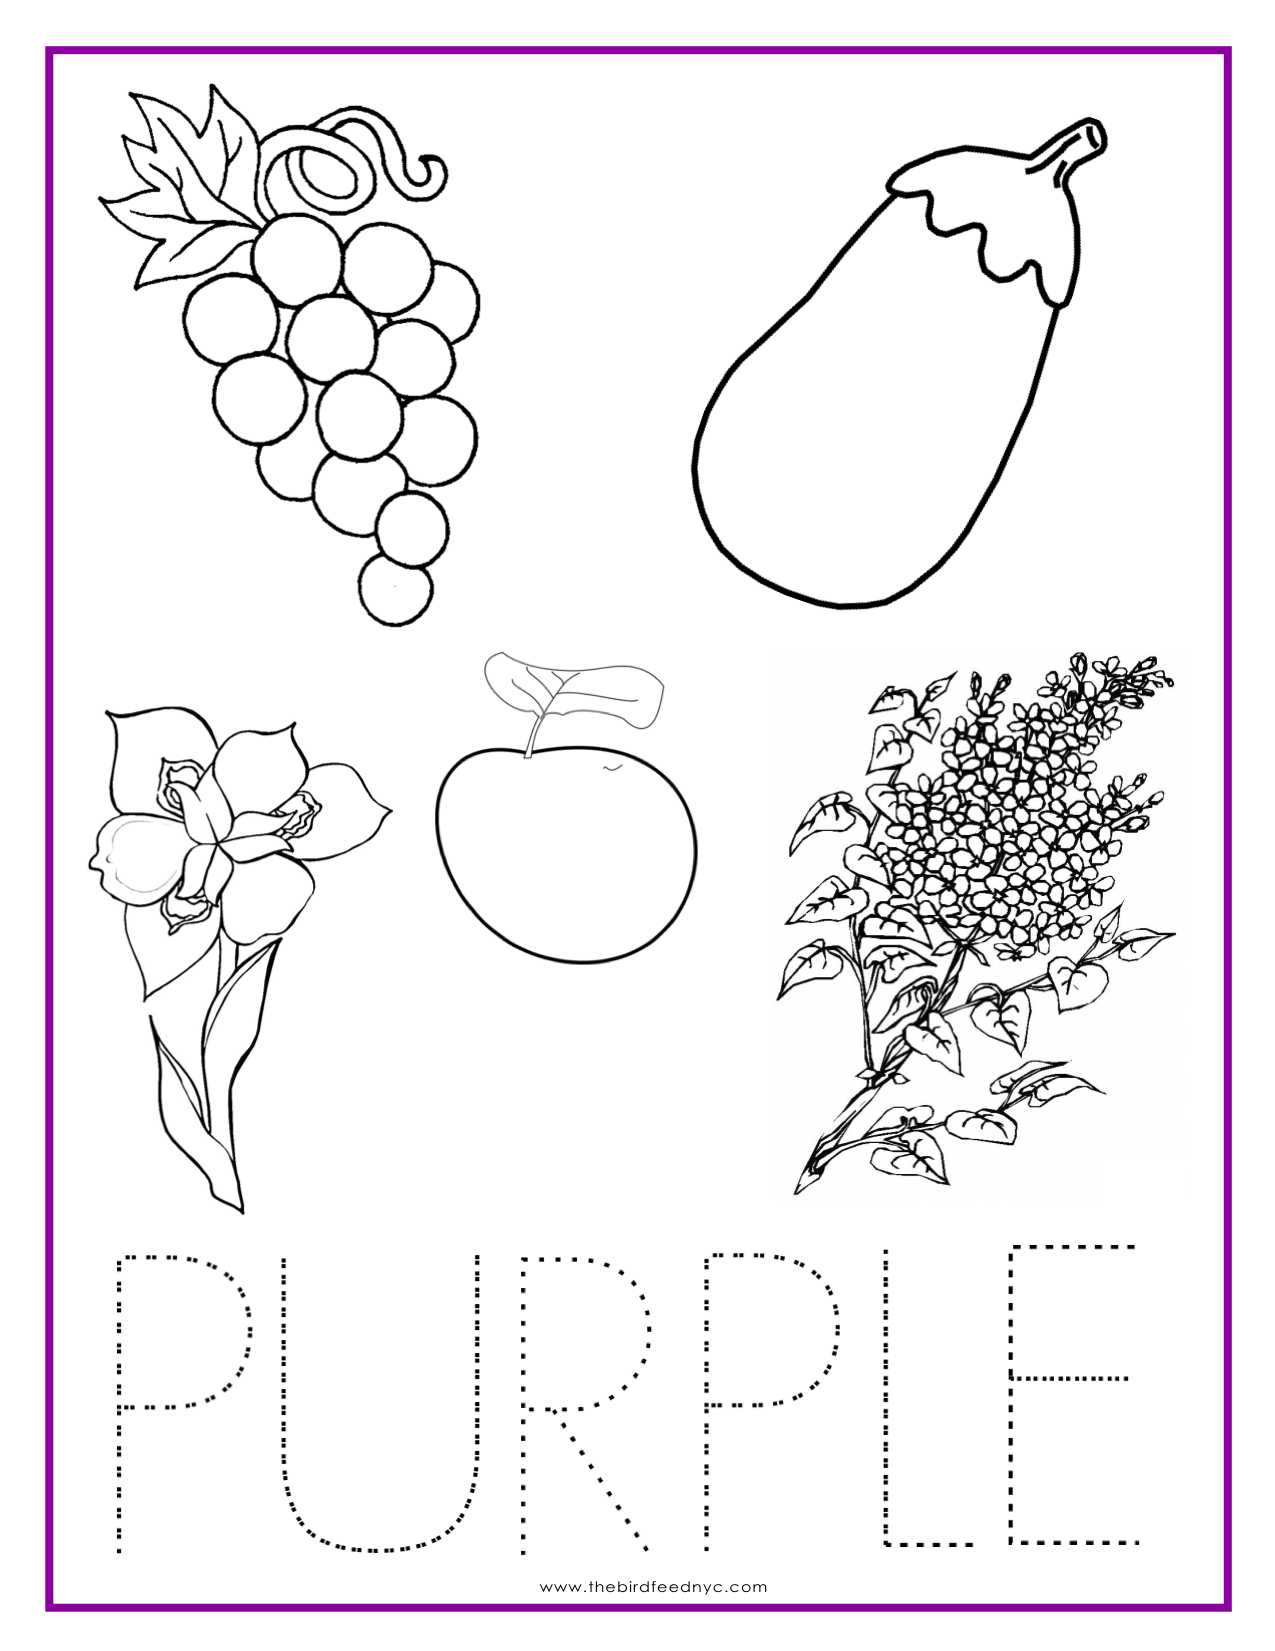 Theme Worksheet 4 Also Purple Color Activity Sheet Colors Pinterest